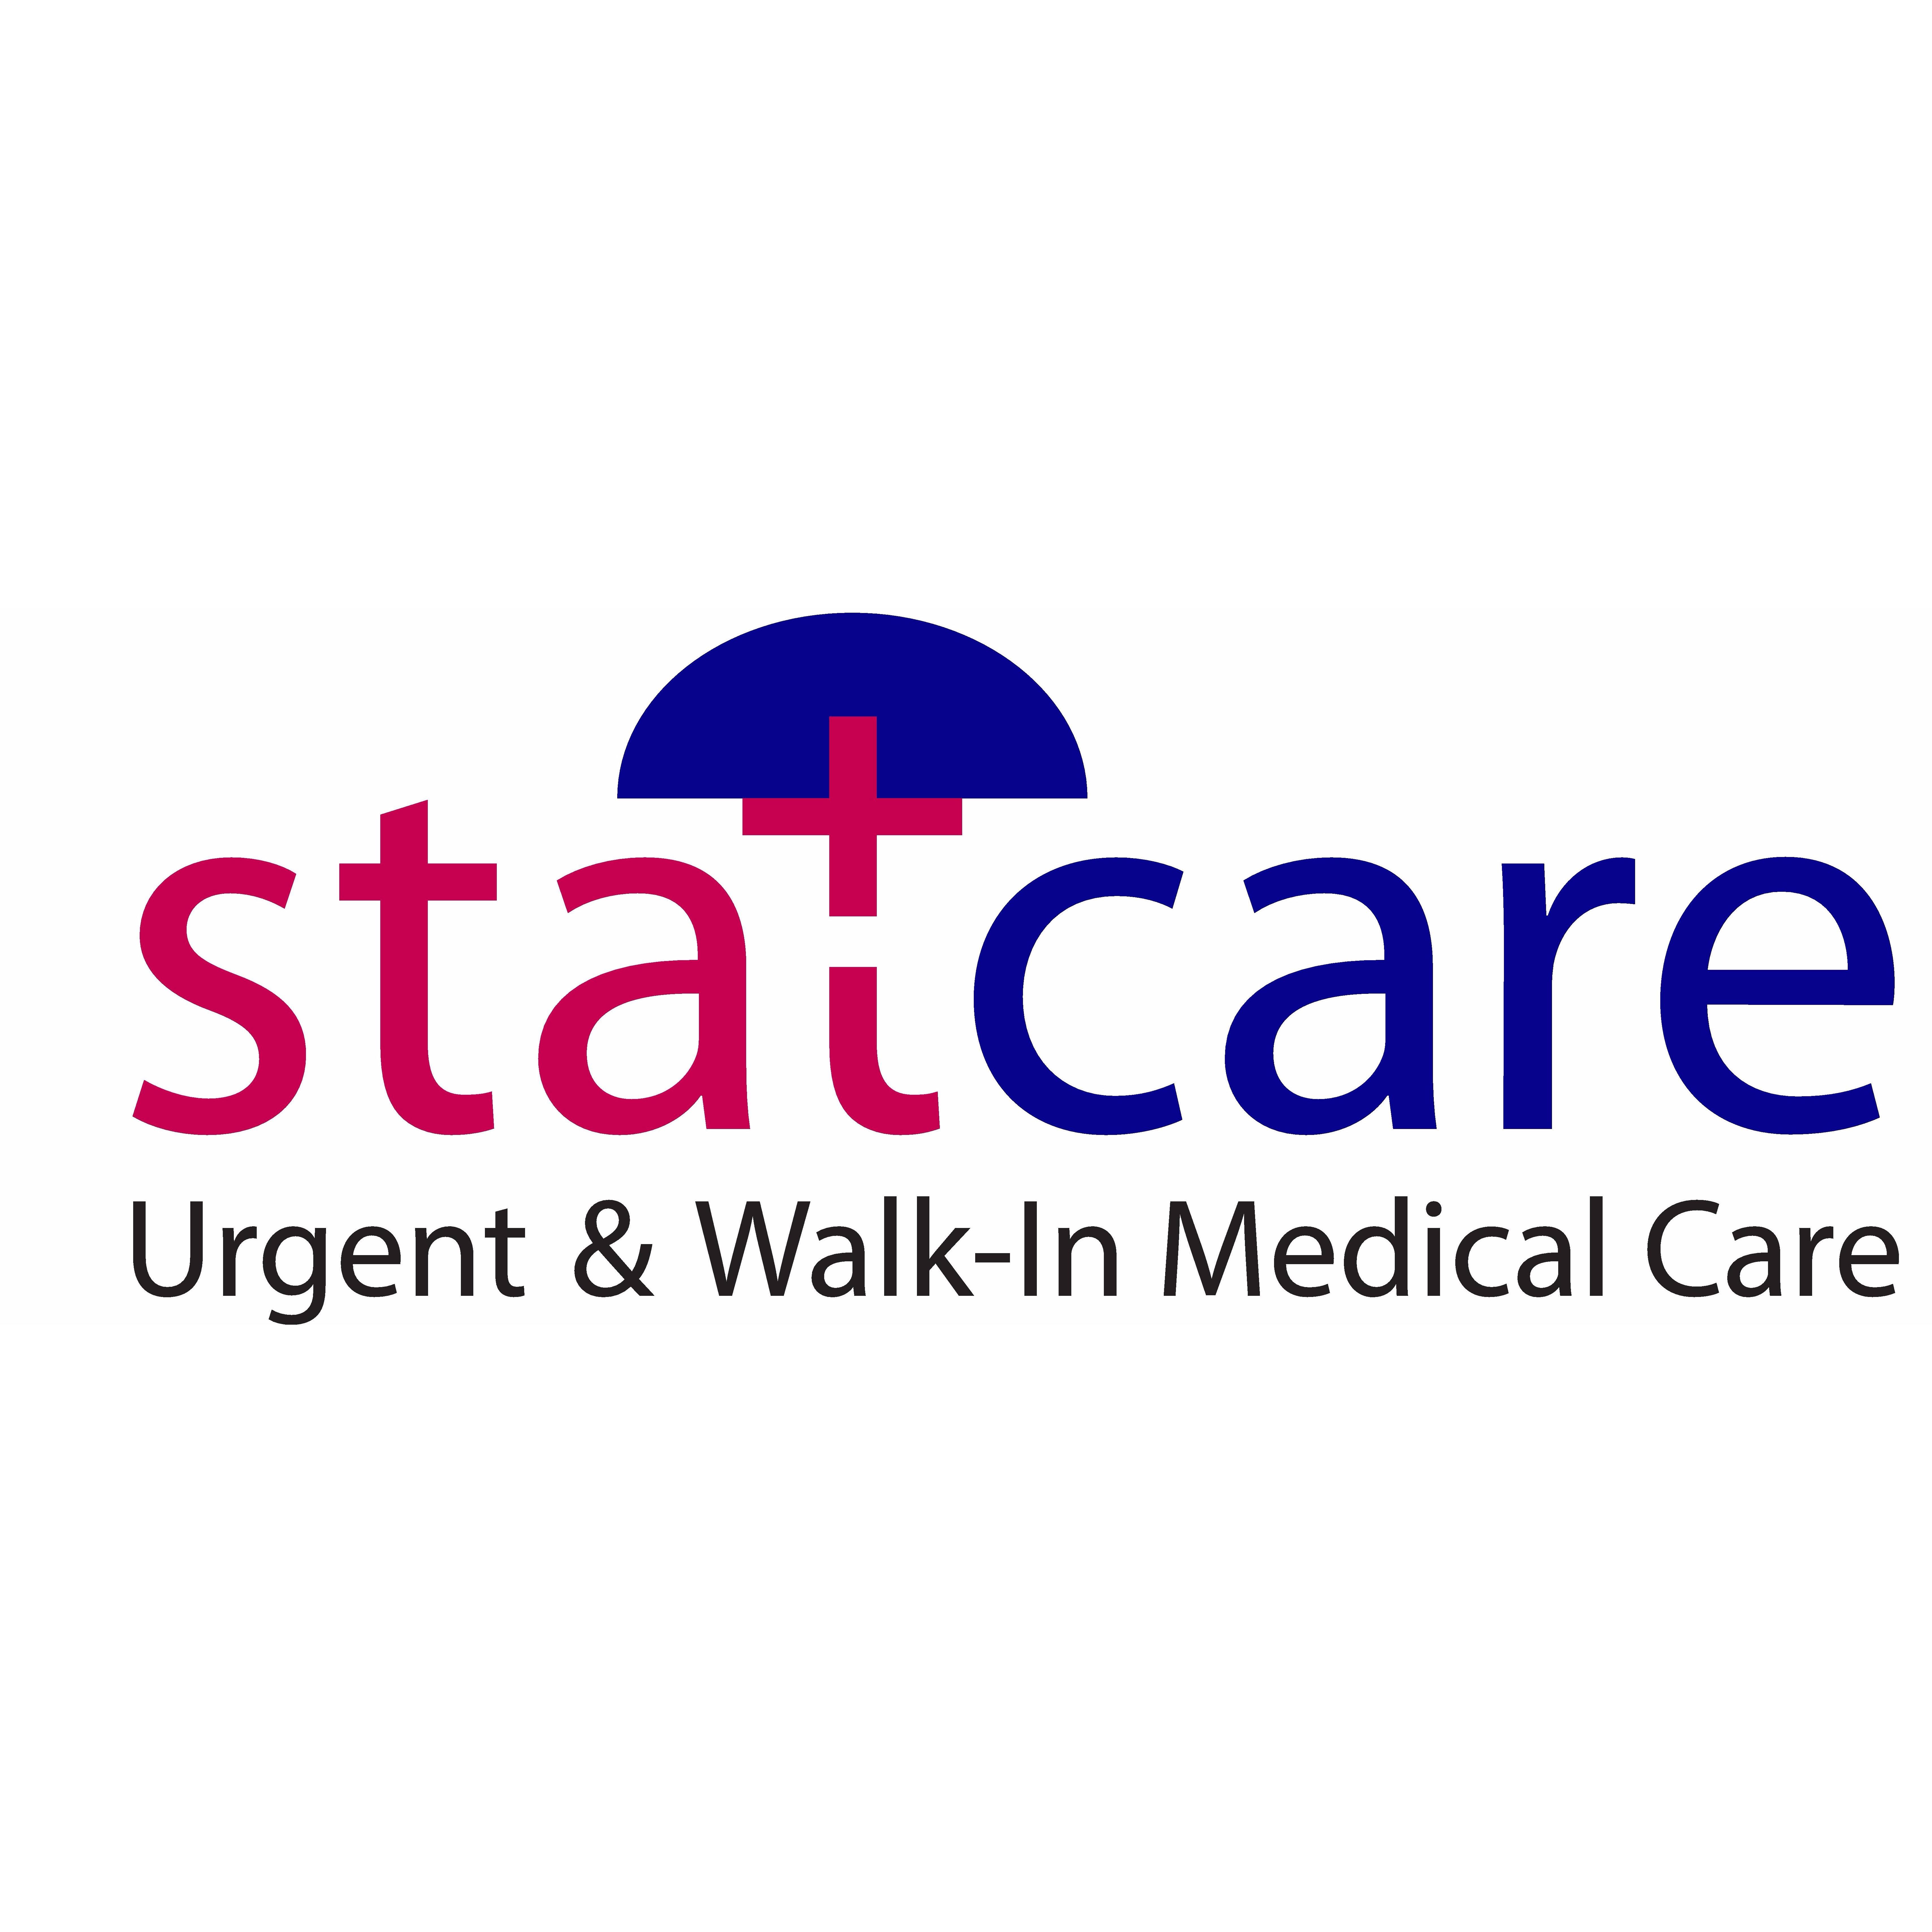 Statcare Urgent & Walk-In Medical Care (Brooklyn) Logo